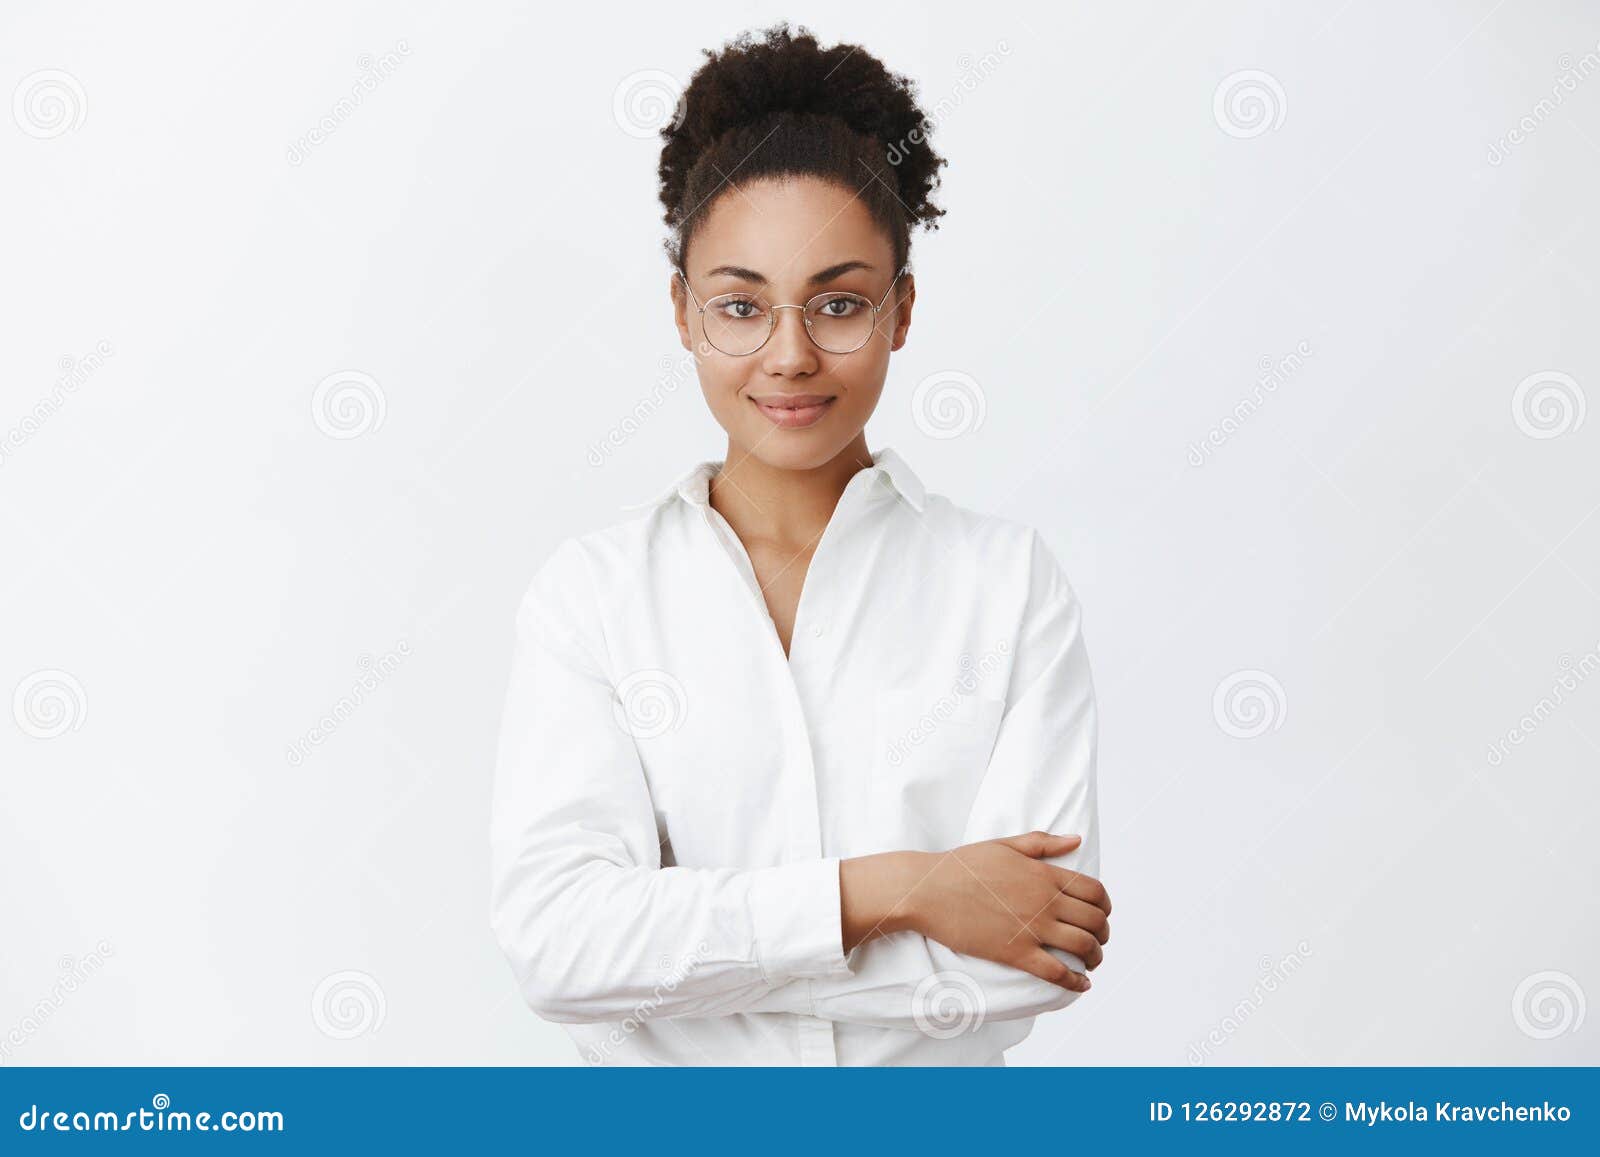 Wie ich kann, helfen Sie Ihnen Reizend freundlich-aussehende Afroamerikanerfrau in den Gläsern und im weißen Hemd, Händchenhalten kreuzte auf Kasten und höflich lächeln, hörenden Kunden oder Warteänderung im Restaurant